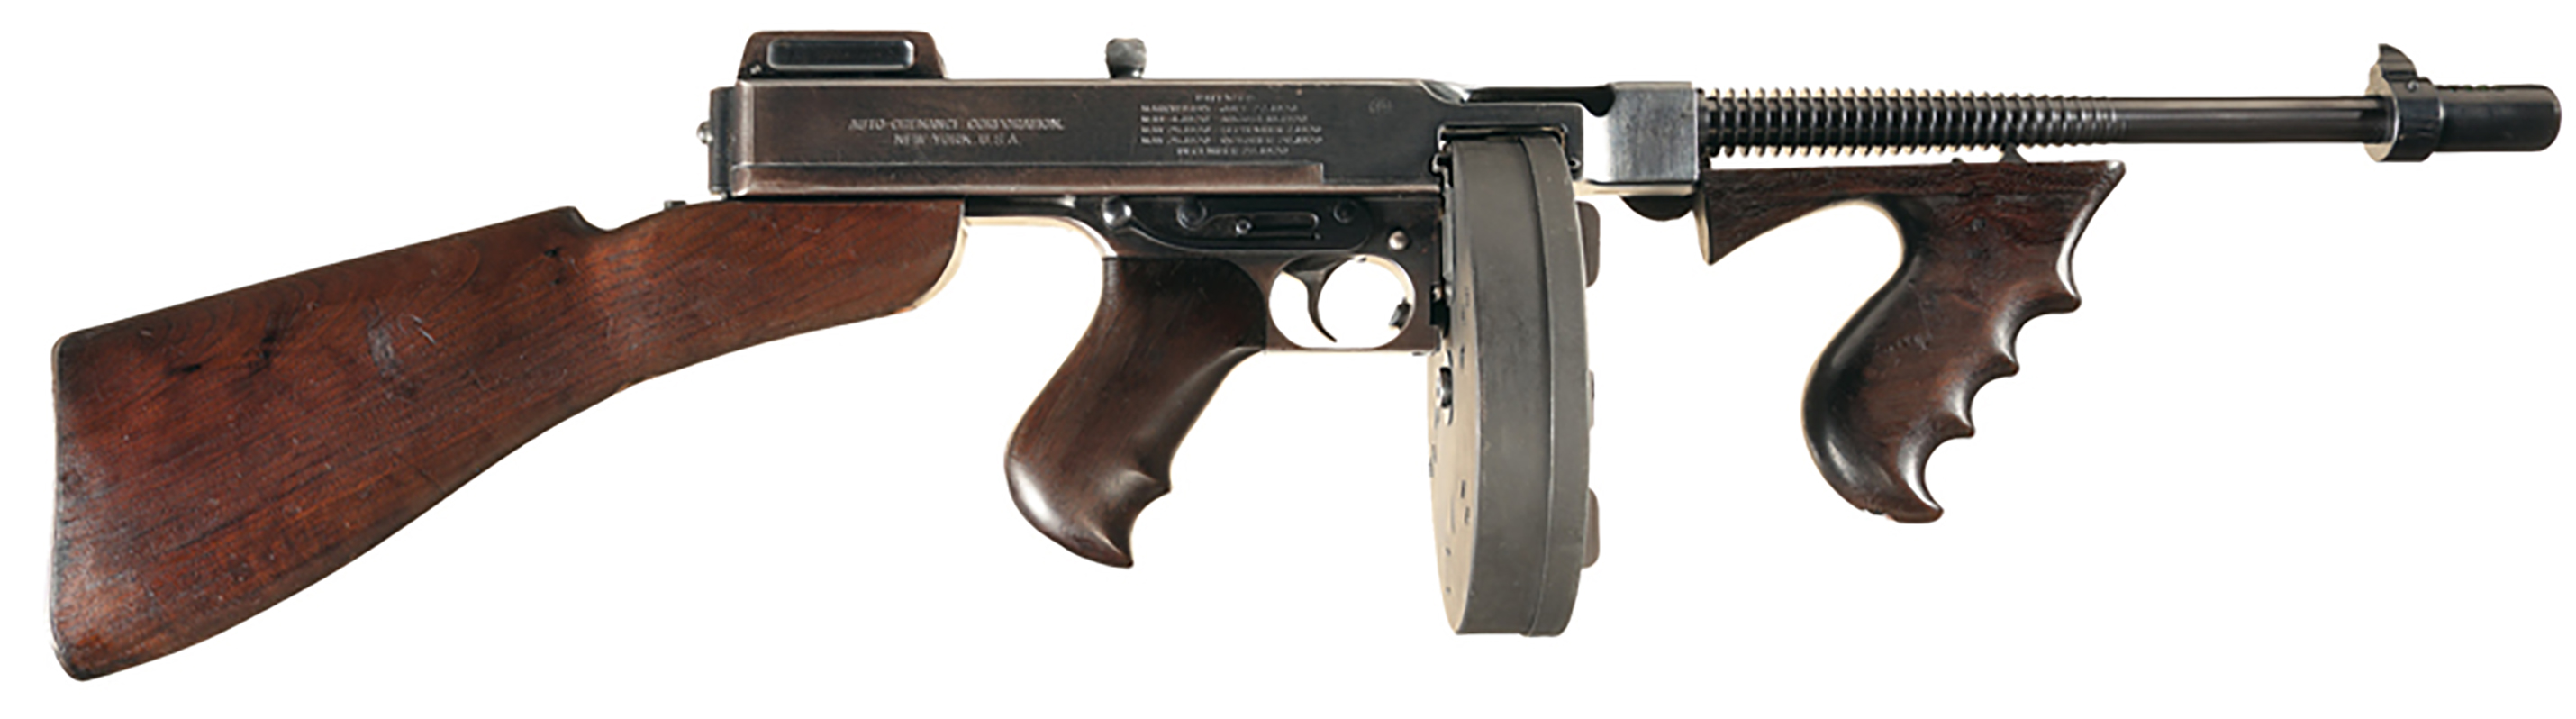 Auto Ordnance Model 1921 Thompson submachine gun